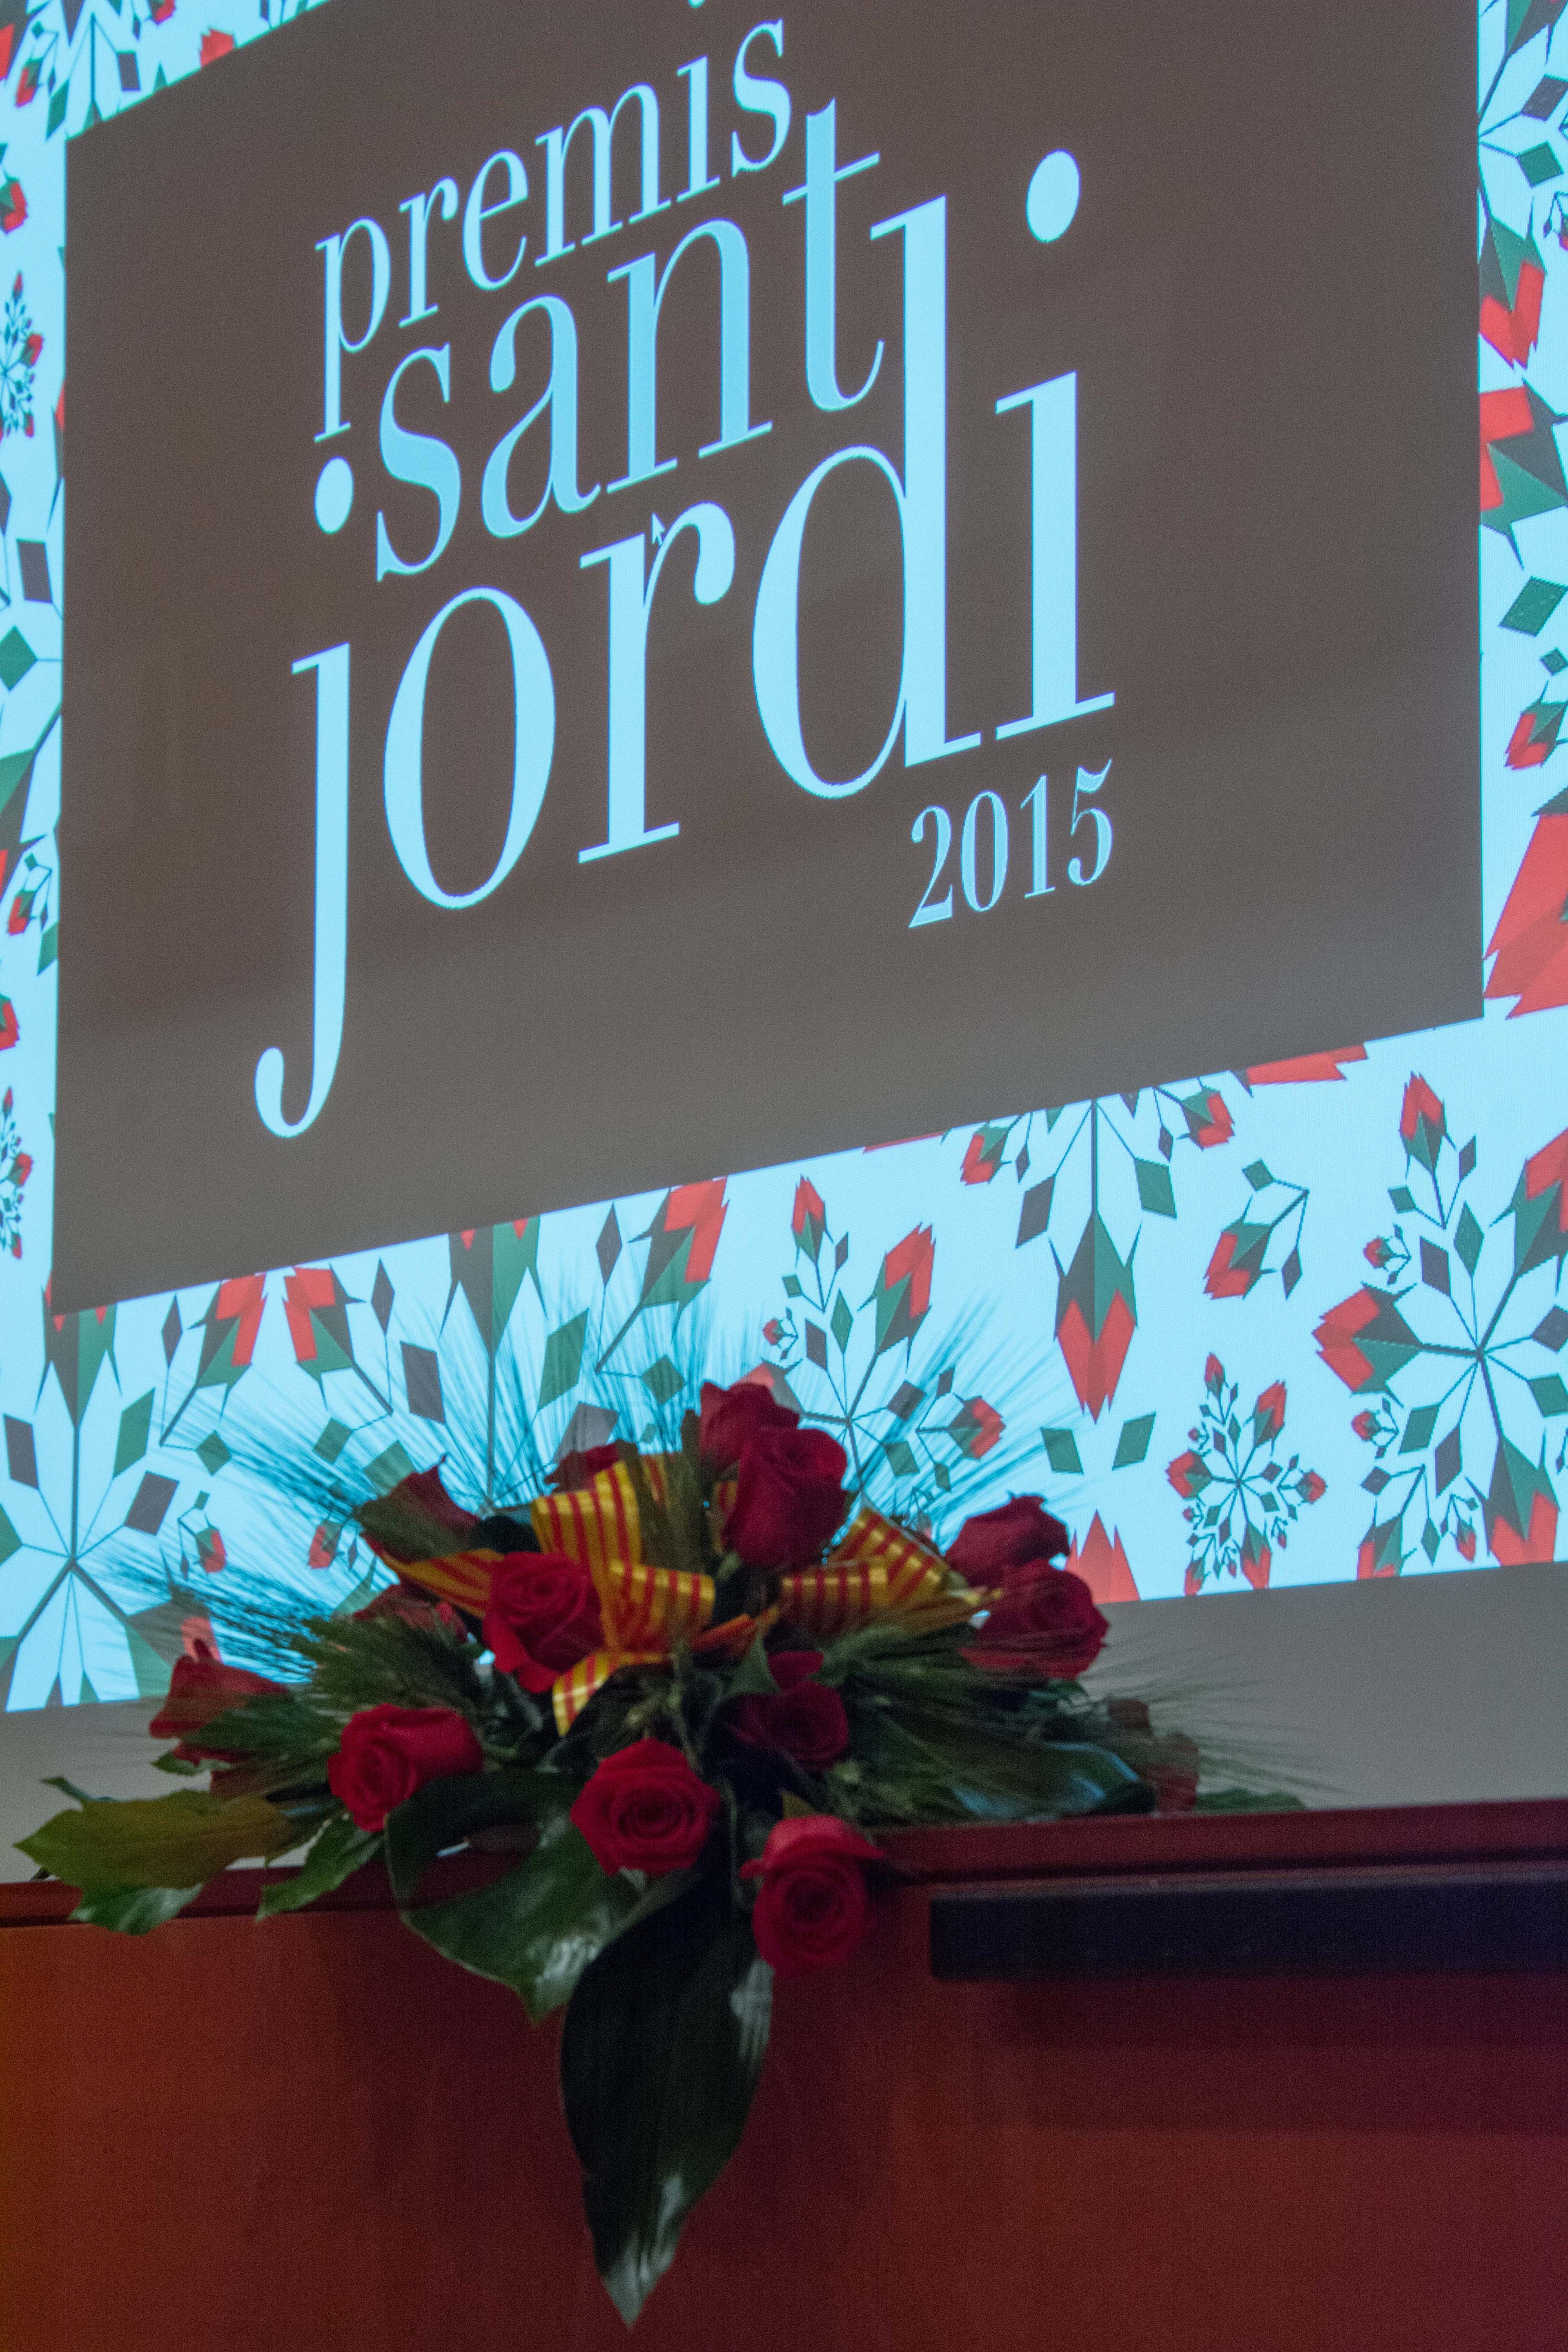 L’escriptor Jordi Llavina apadrina el XXXVè Premi Literari Sant Jordi 